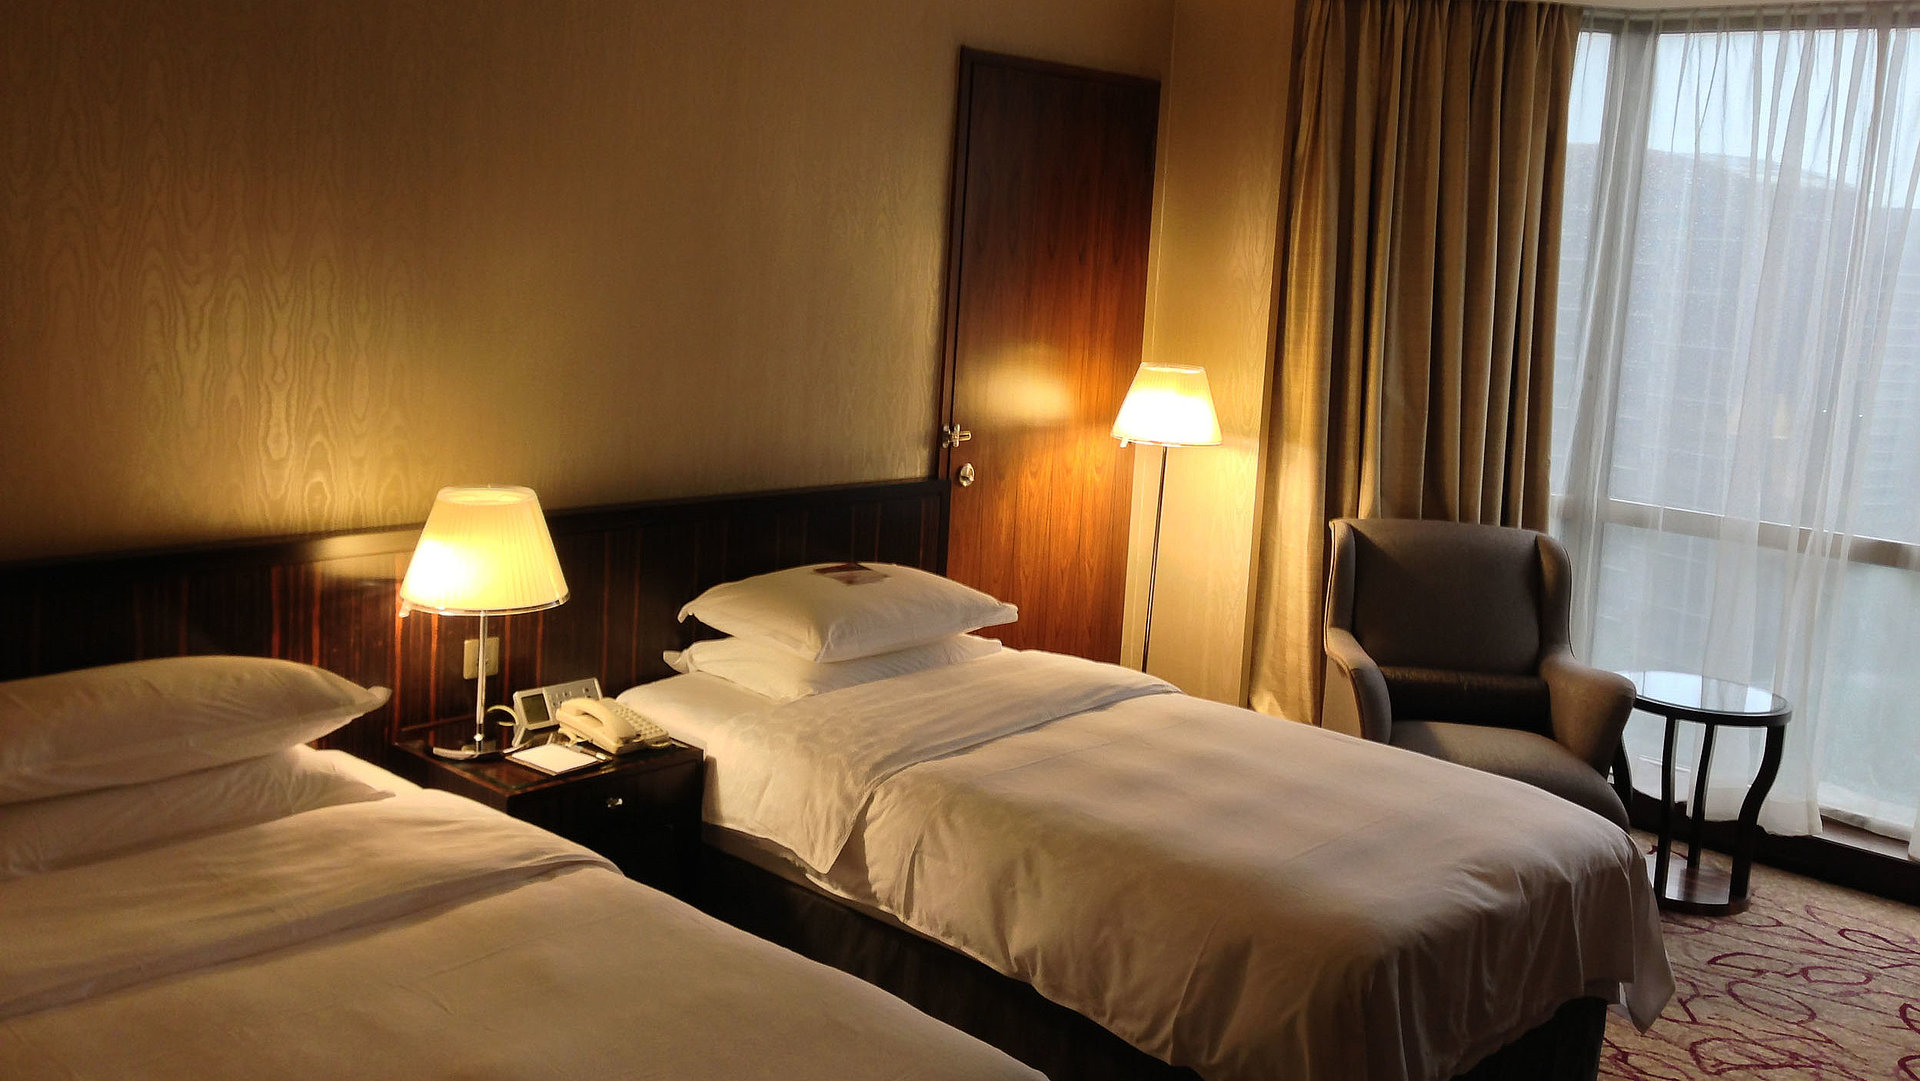 Hotels für Gruppen in Ostbayern - sehr ordentliches Hotelzimmer mit zwei Betten, warmer Nachtlampe und Gardinen